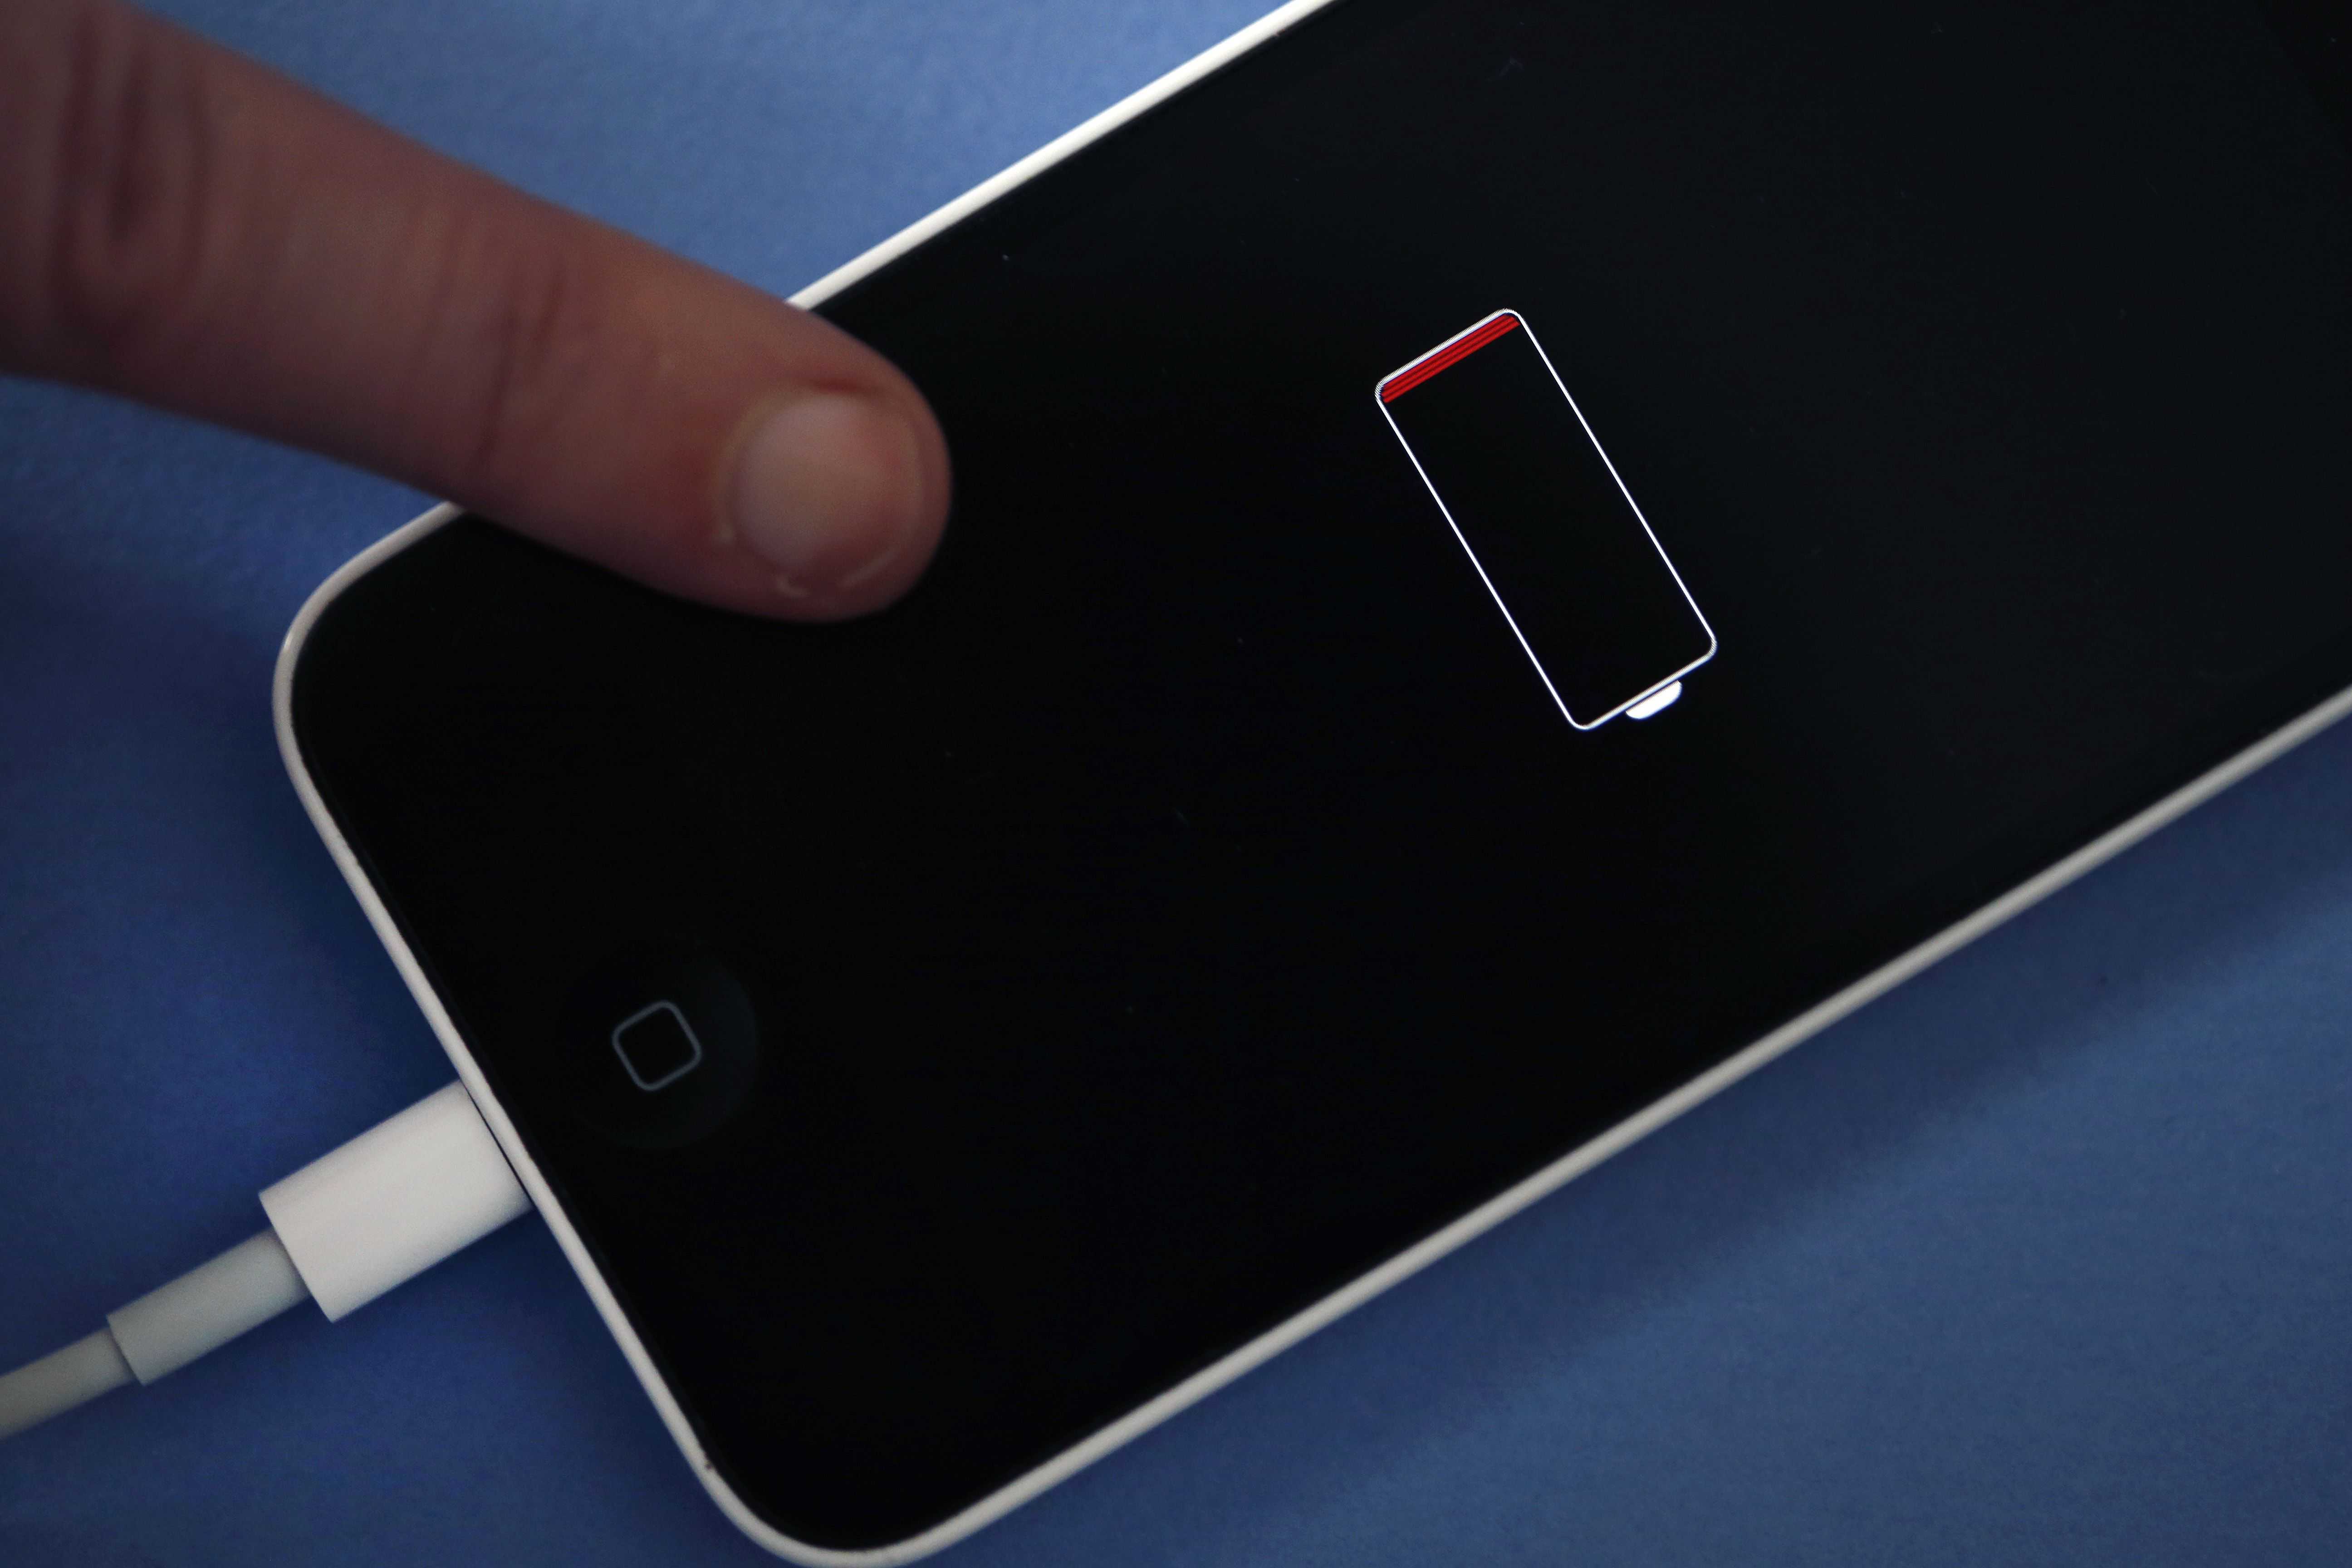 Айфон стал быстро разряжаться и нагреваться: как экономить заряд батареи и продлить работу